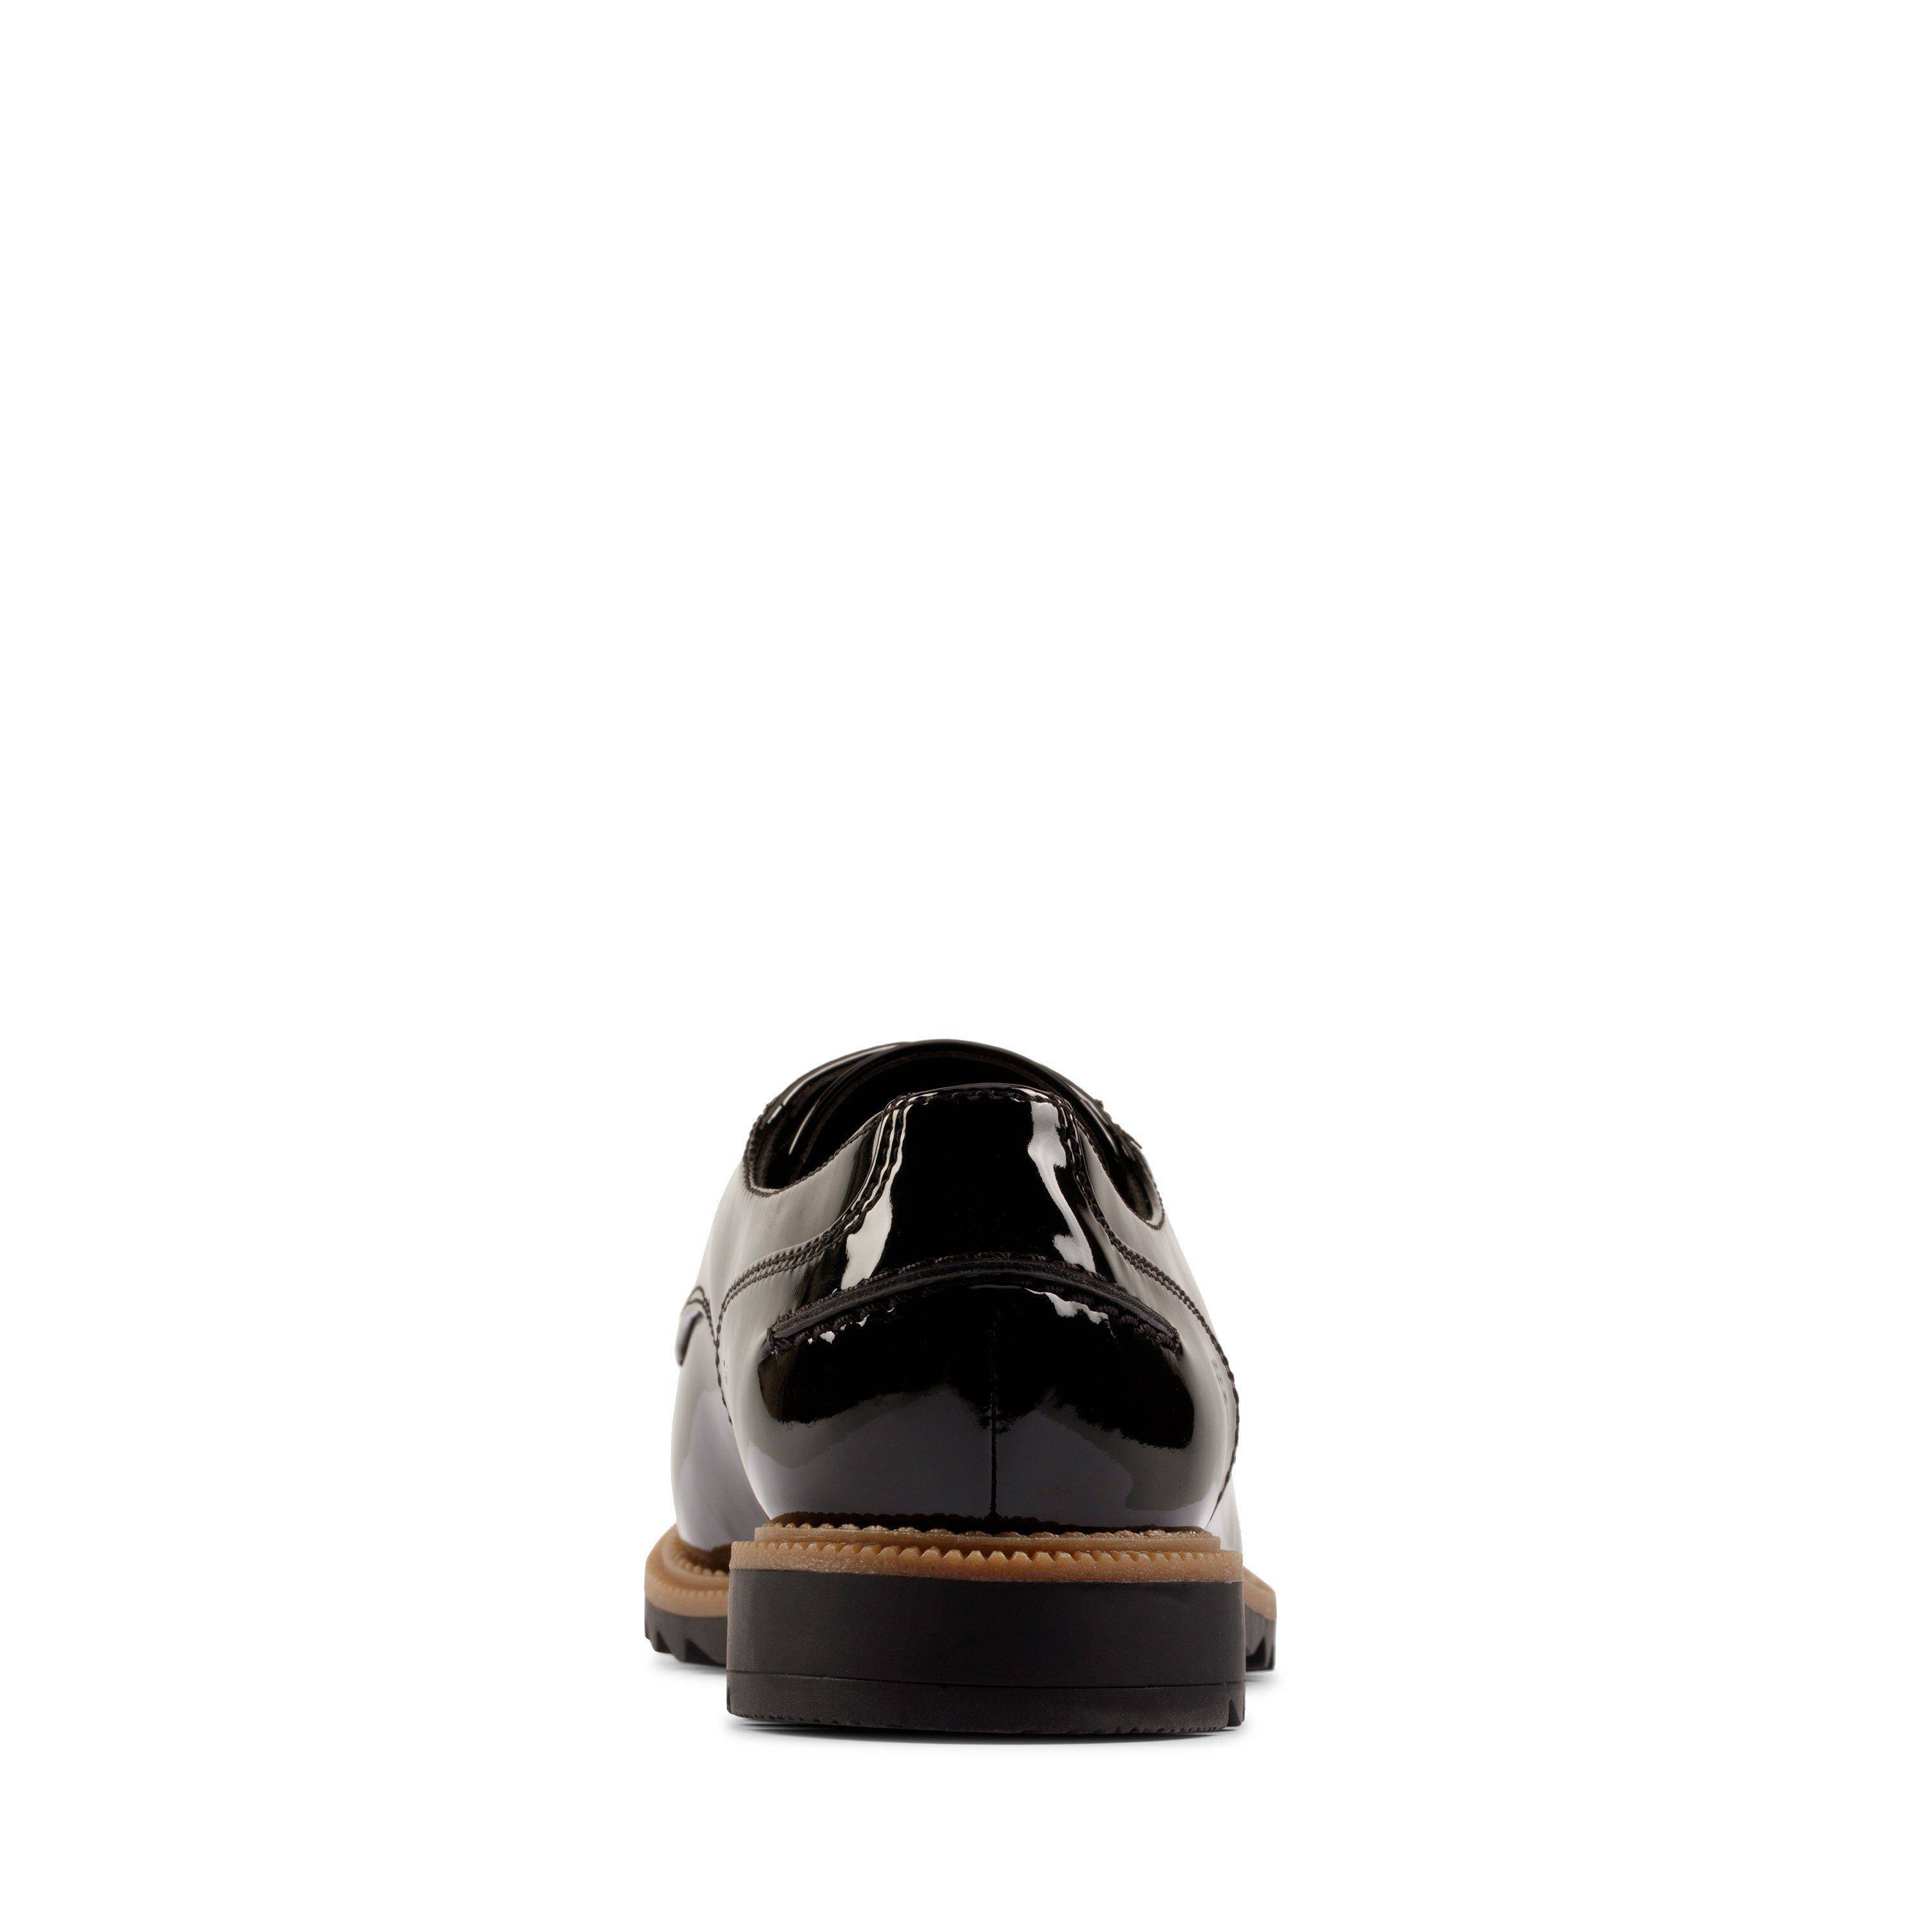 Женские полуботинки Clarks (Griffin Mabel 26155548), черные, цвет черный, размер 36 - фото 6